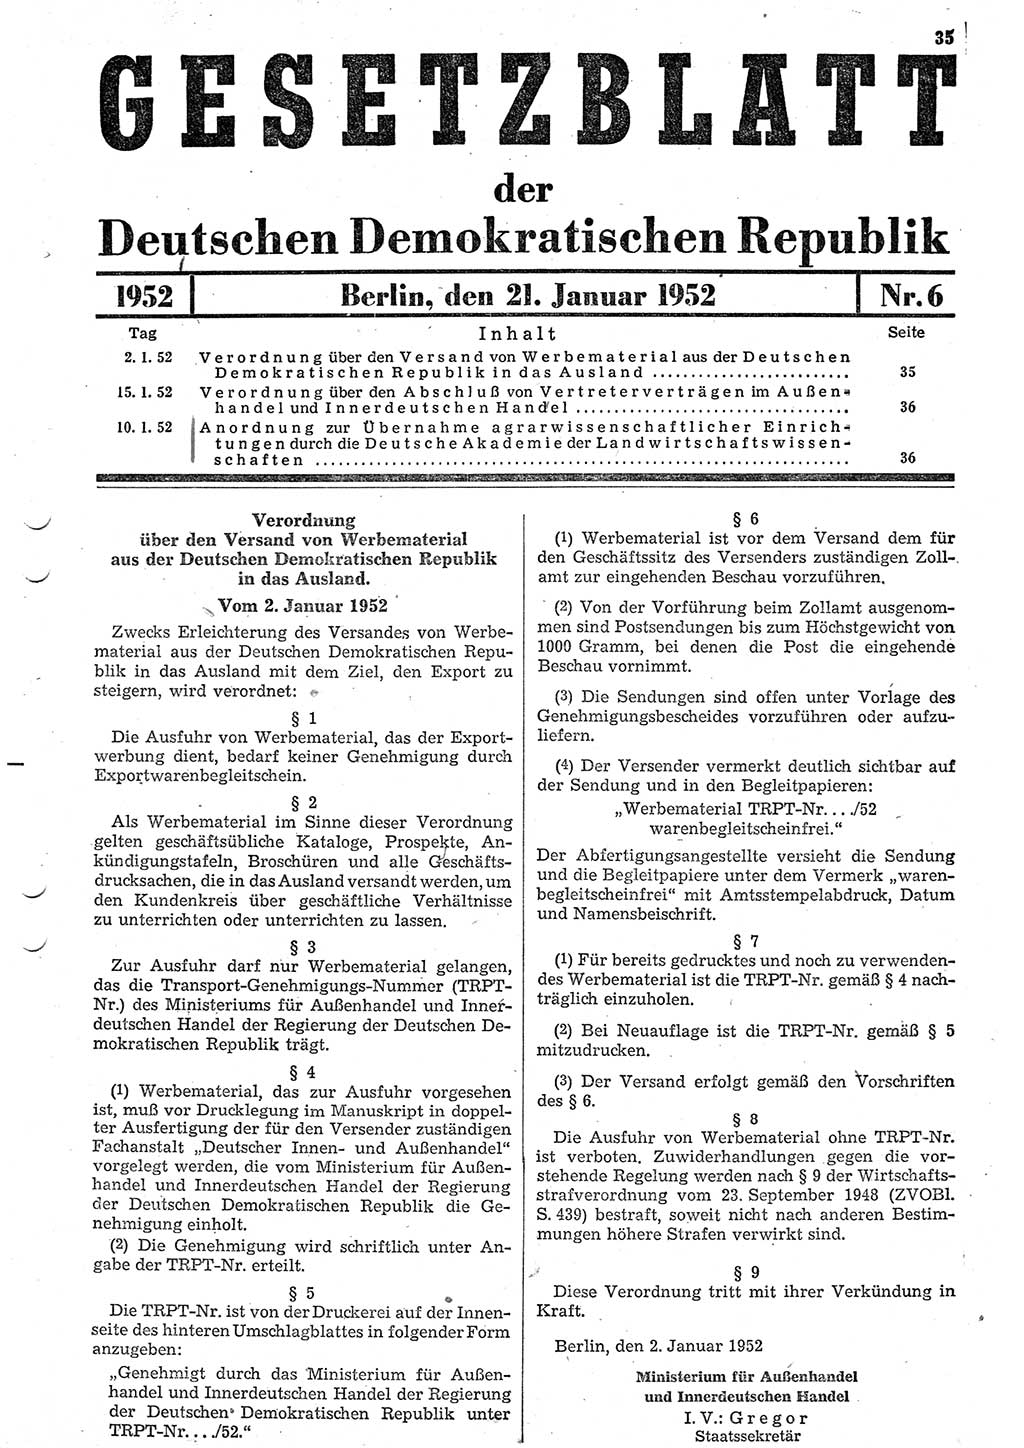 Gesetzblatt (GBl.) der Deutschen Demokratischen Republik (DDR) 1952, Seite 35 (GBl. DDR 1952, S. 35)